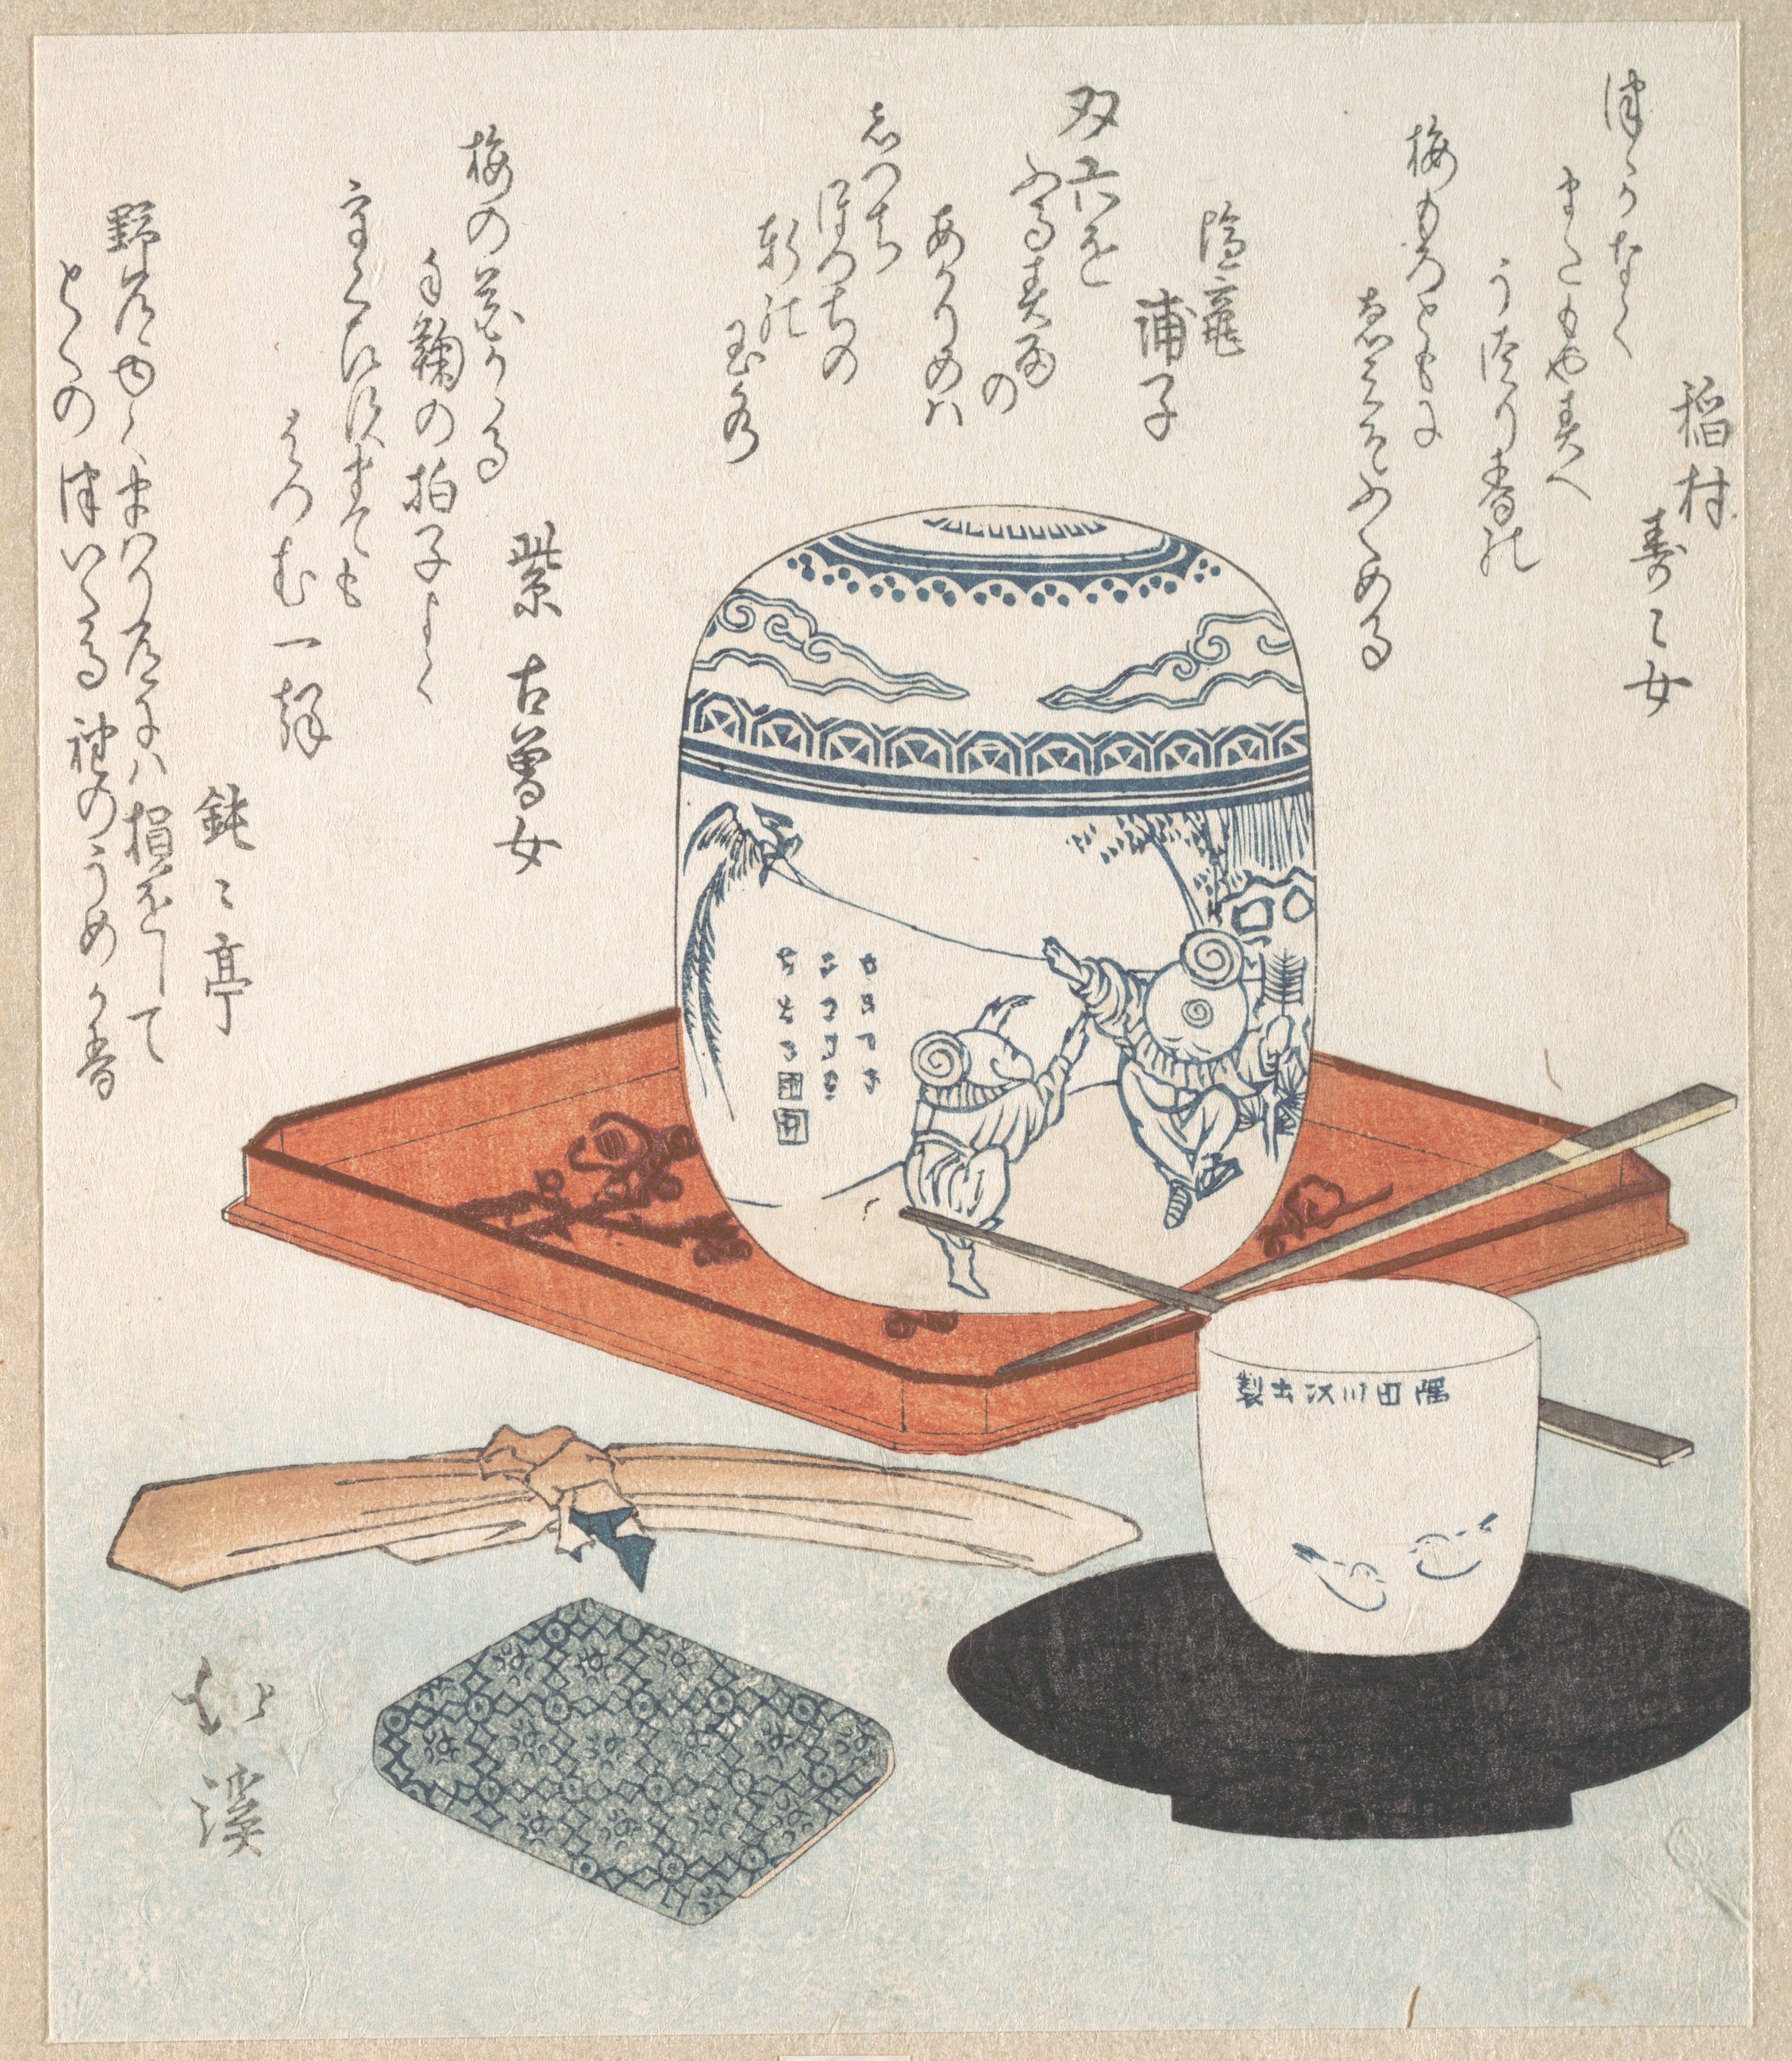 茶具 by 鱼屋 北溪 - 十九世纪 - 19.7 x 16.7 cm 